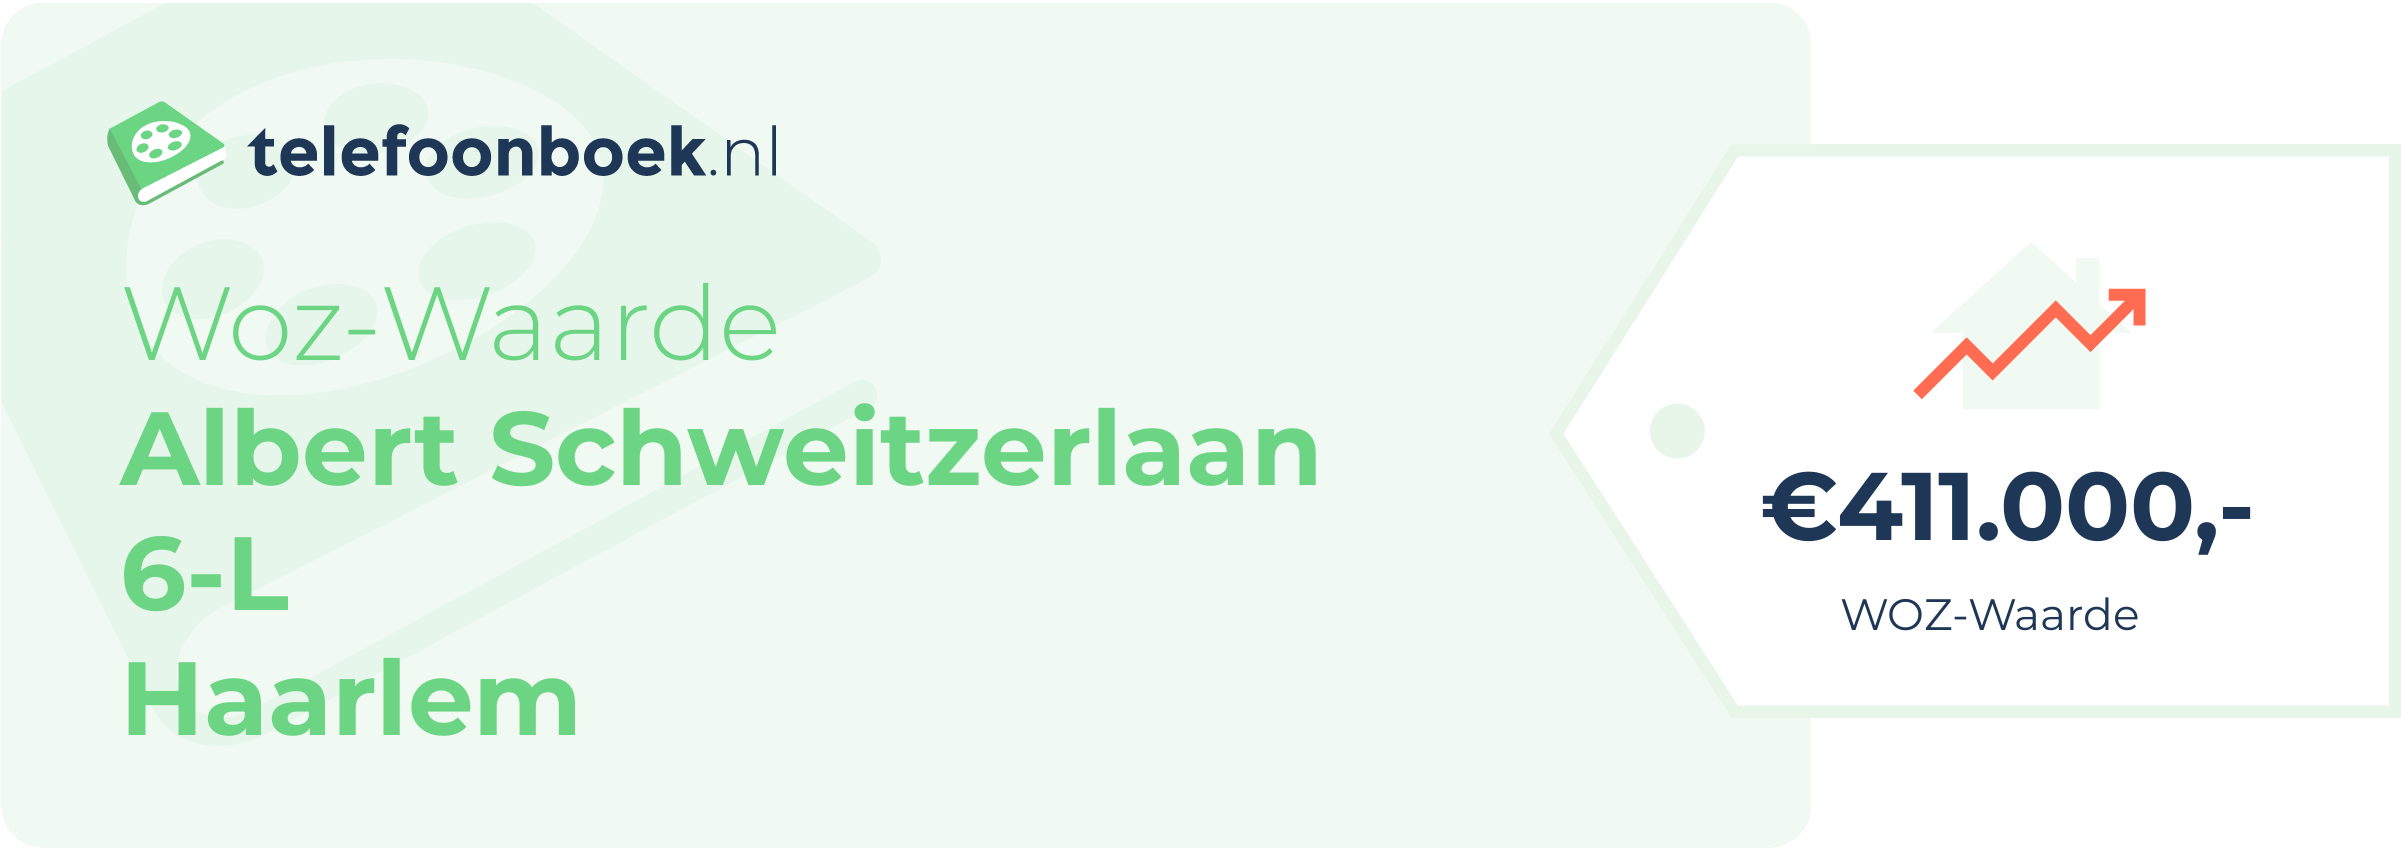 WOZ-waarde Albert Schweitzerlaan 6-L Haarlem